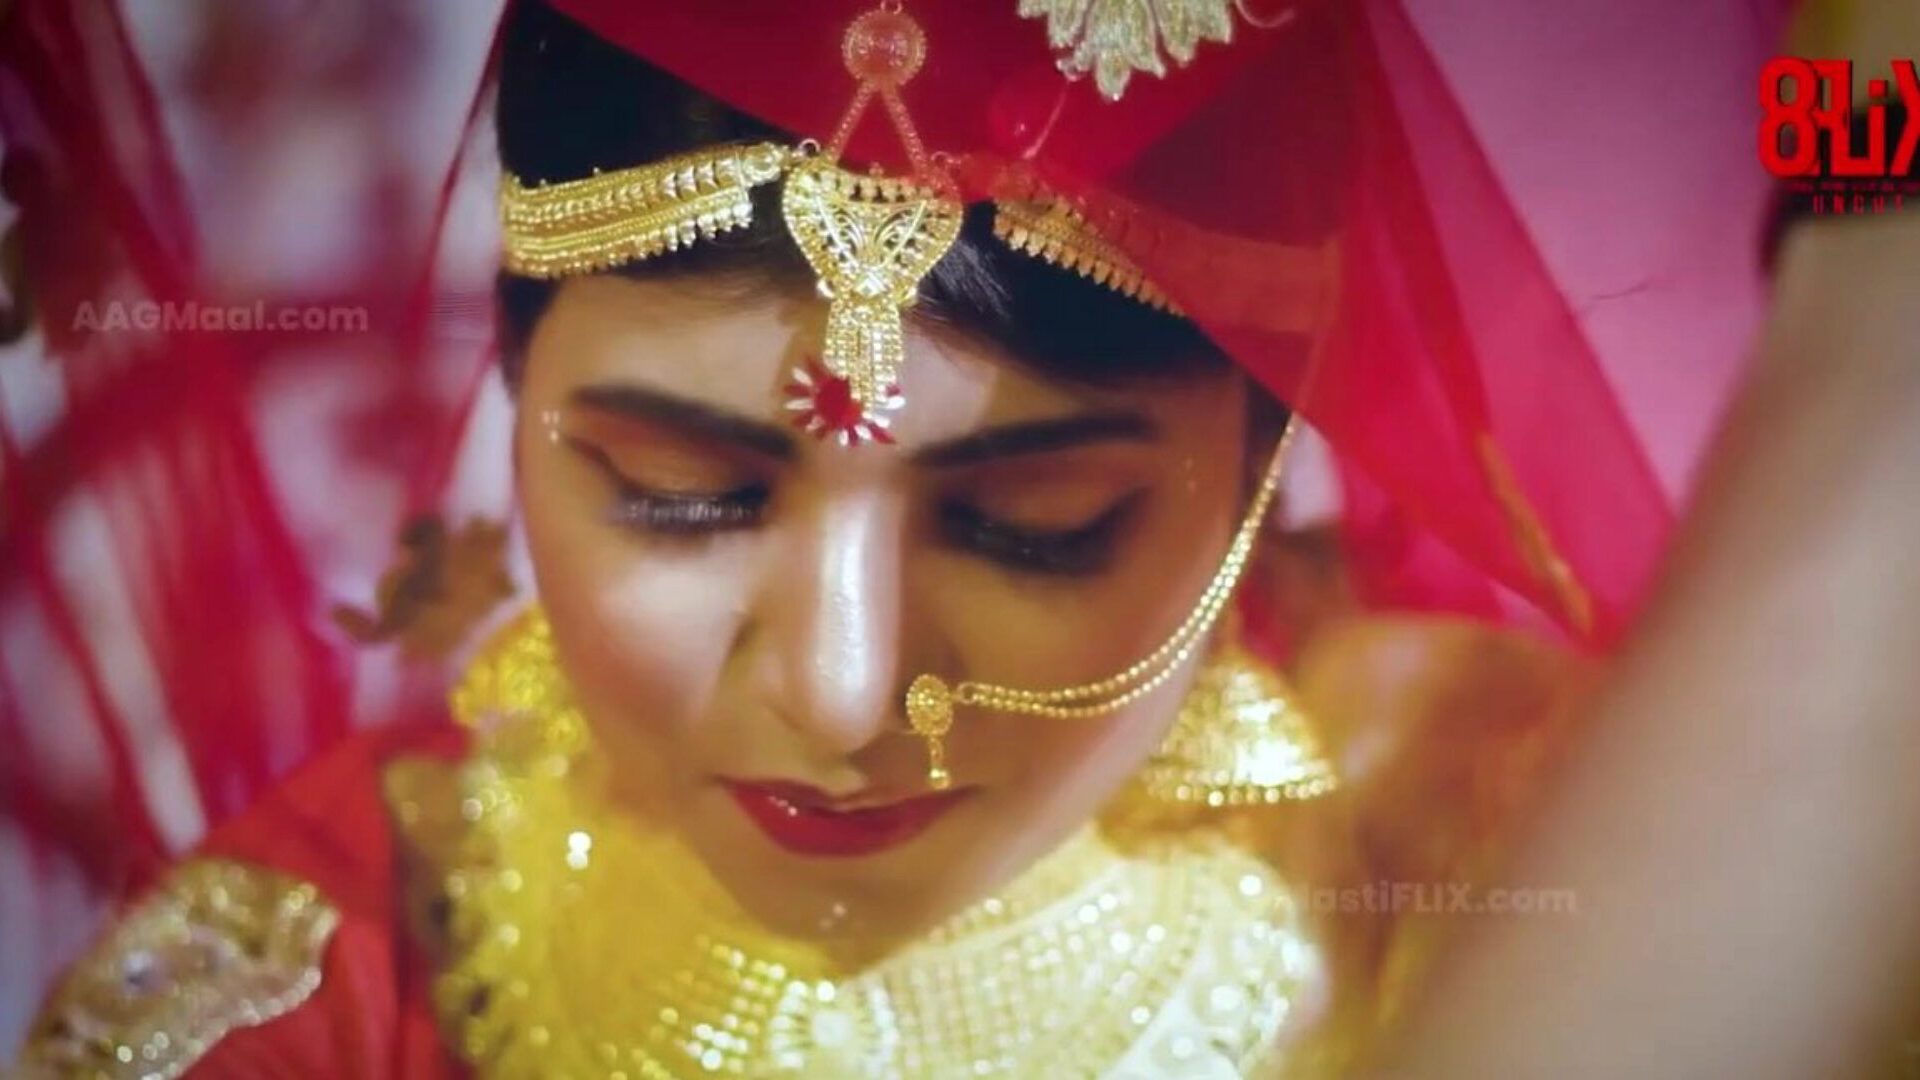 bebo wedding uncut - volgend niveau van Indiase webseries